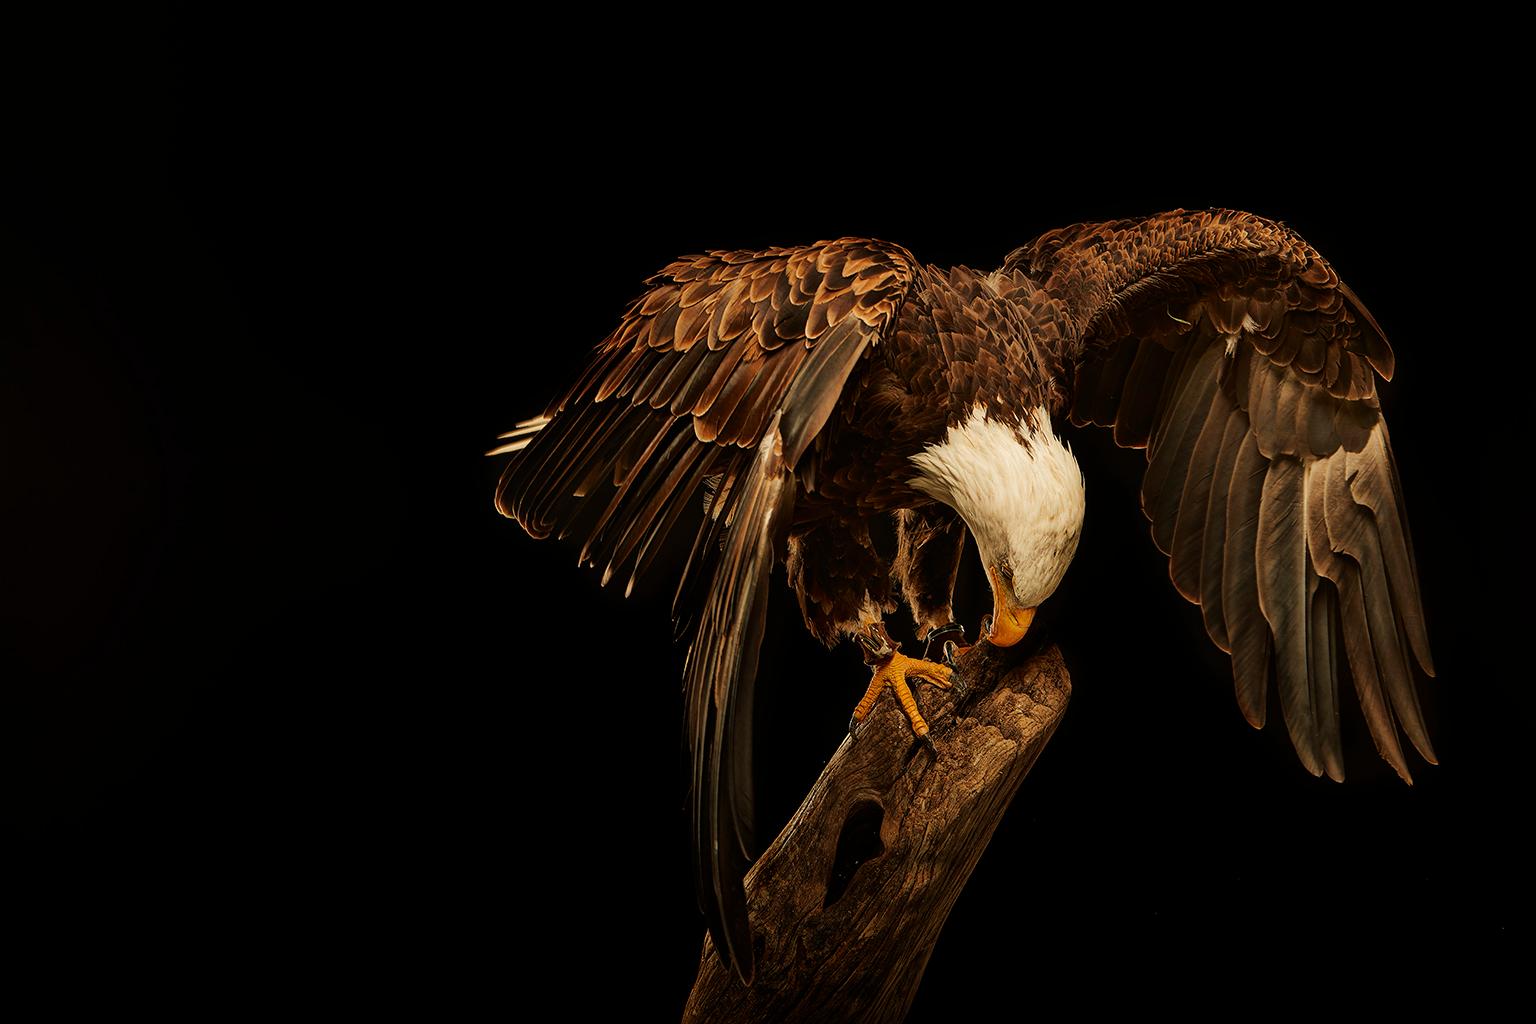 Birds of Prey Bald Eagle No. 18 - Photograph by Chris Gordaneer